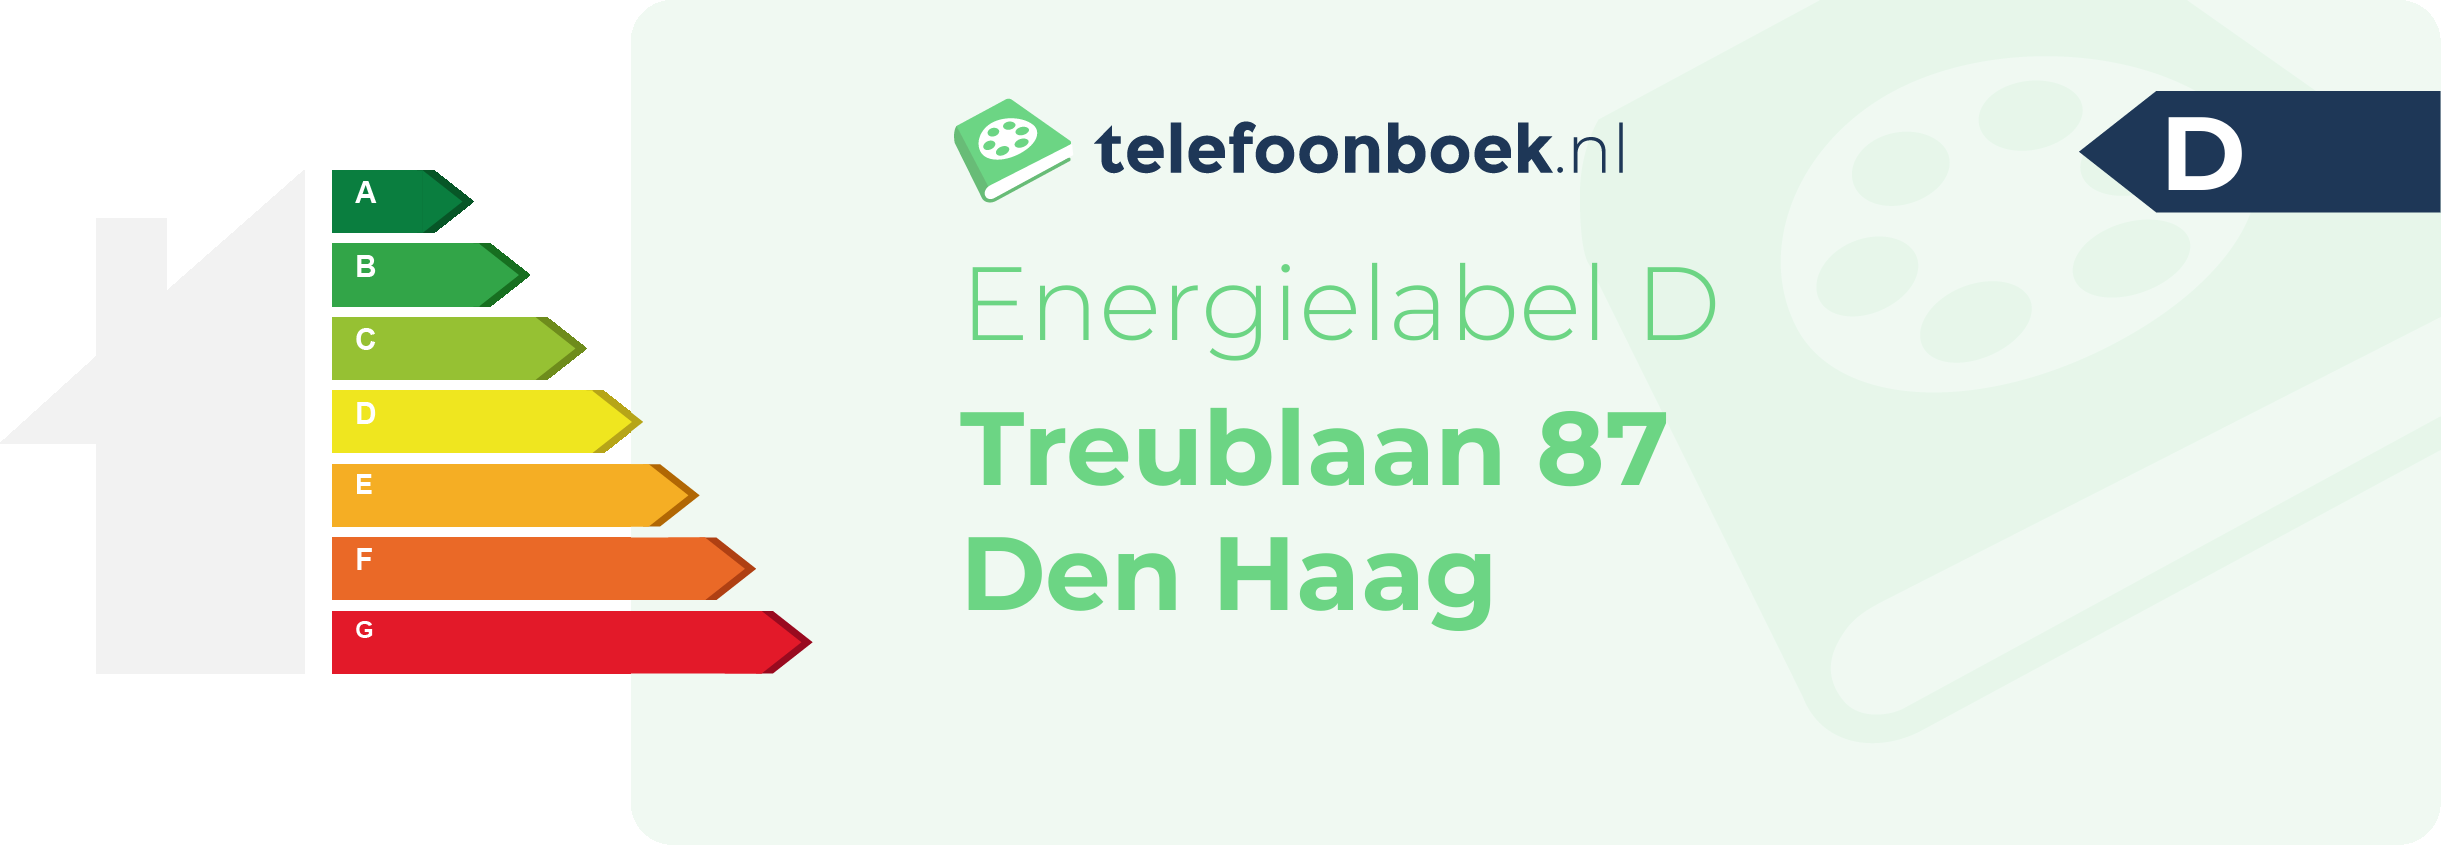 Energielabel Treublaan 87 Den Haag